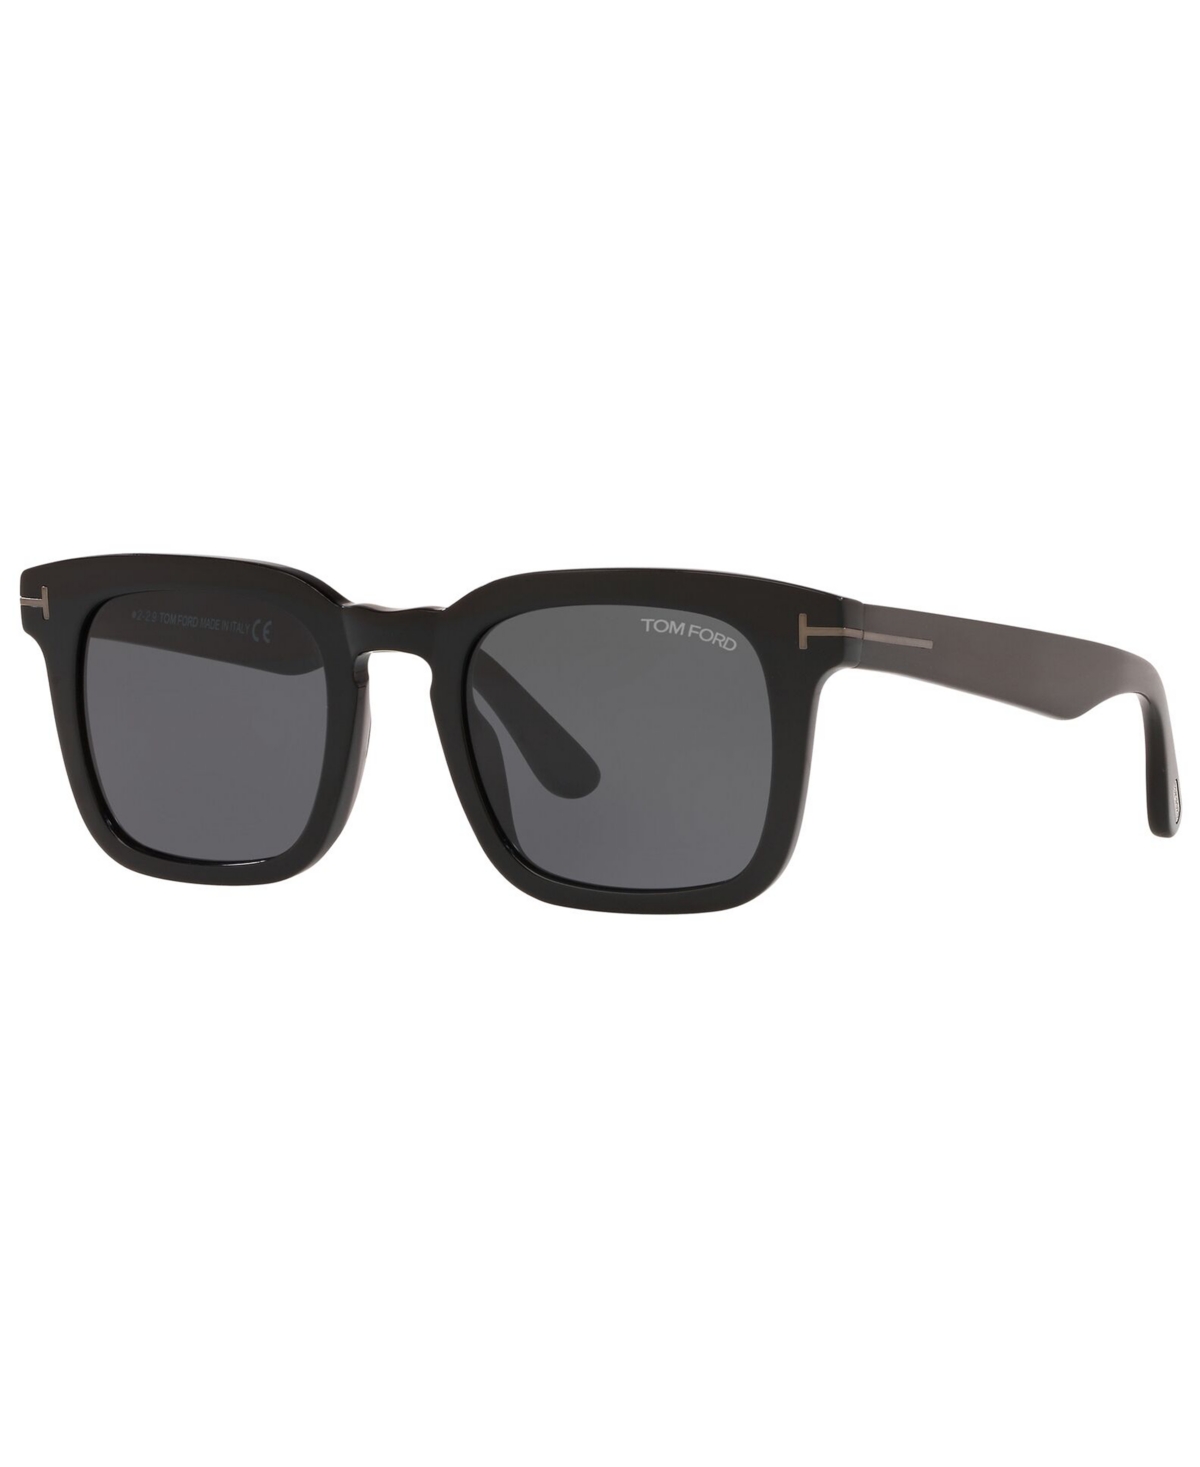 Tom Ford Men's Sunglasses, Tr001099 In Black Shiny,gunmetal